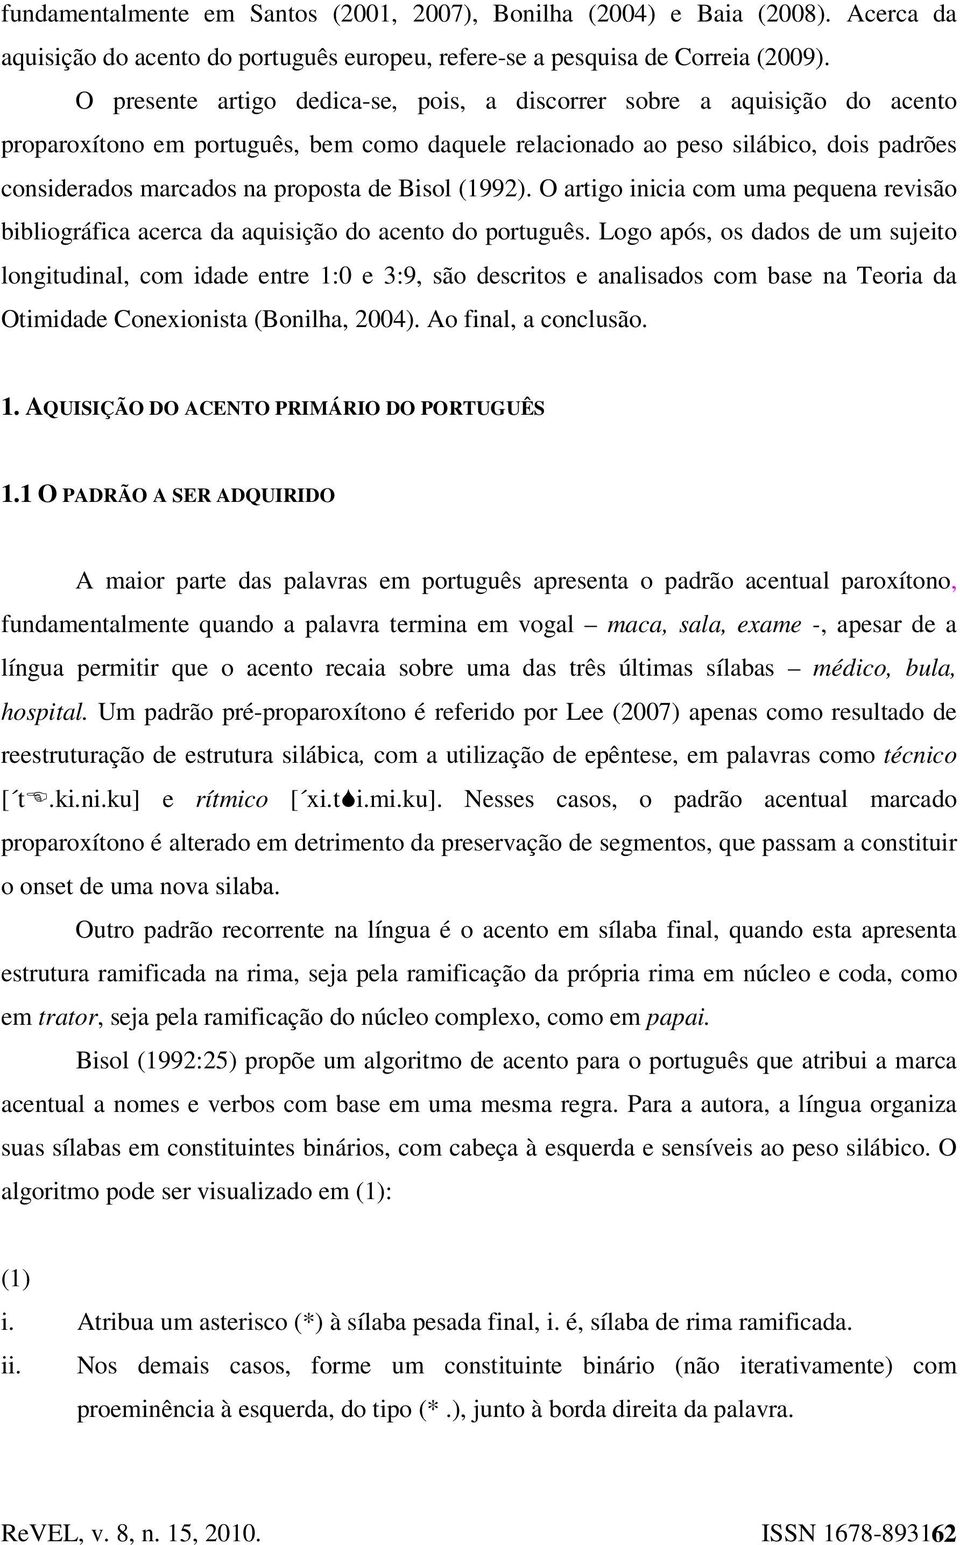 Bisol (1992). O artigo inicia com uma pequena revisão bibliográfica acerca da aquisição do acento do português.